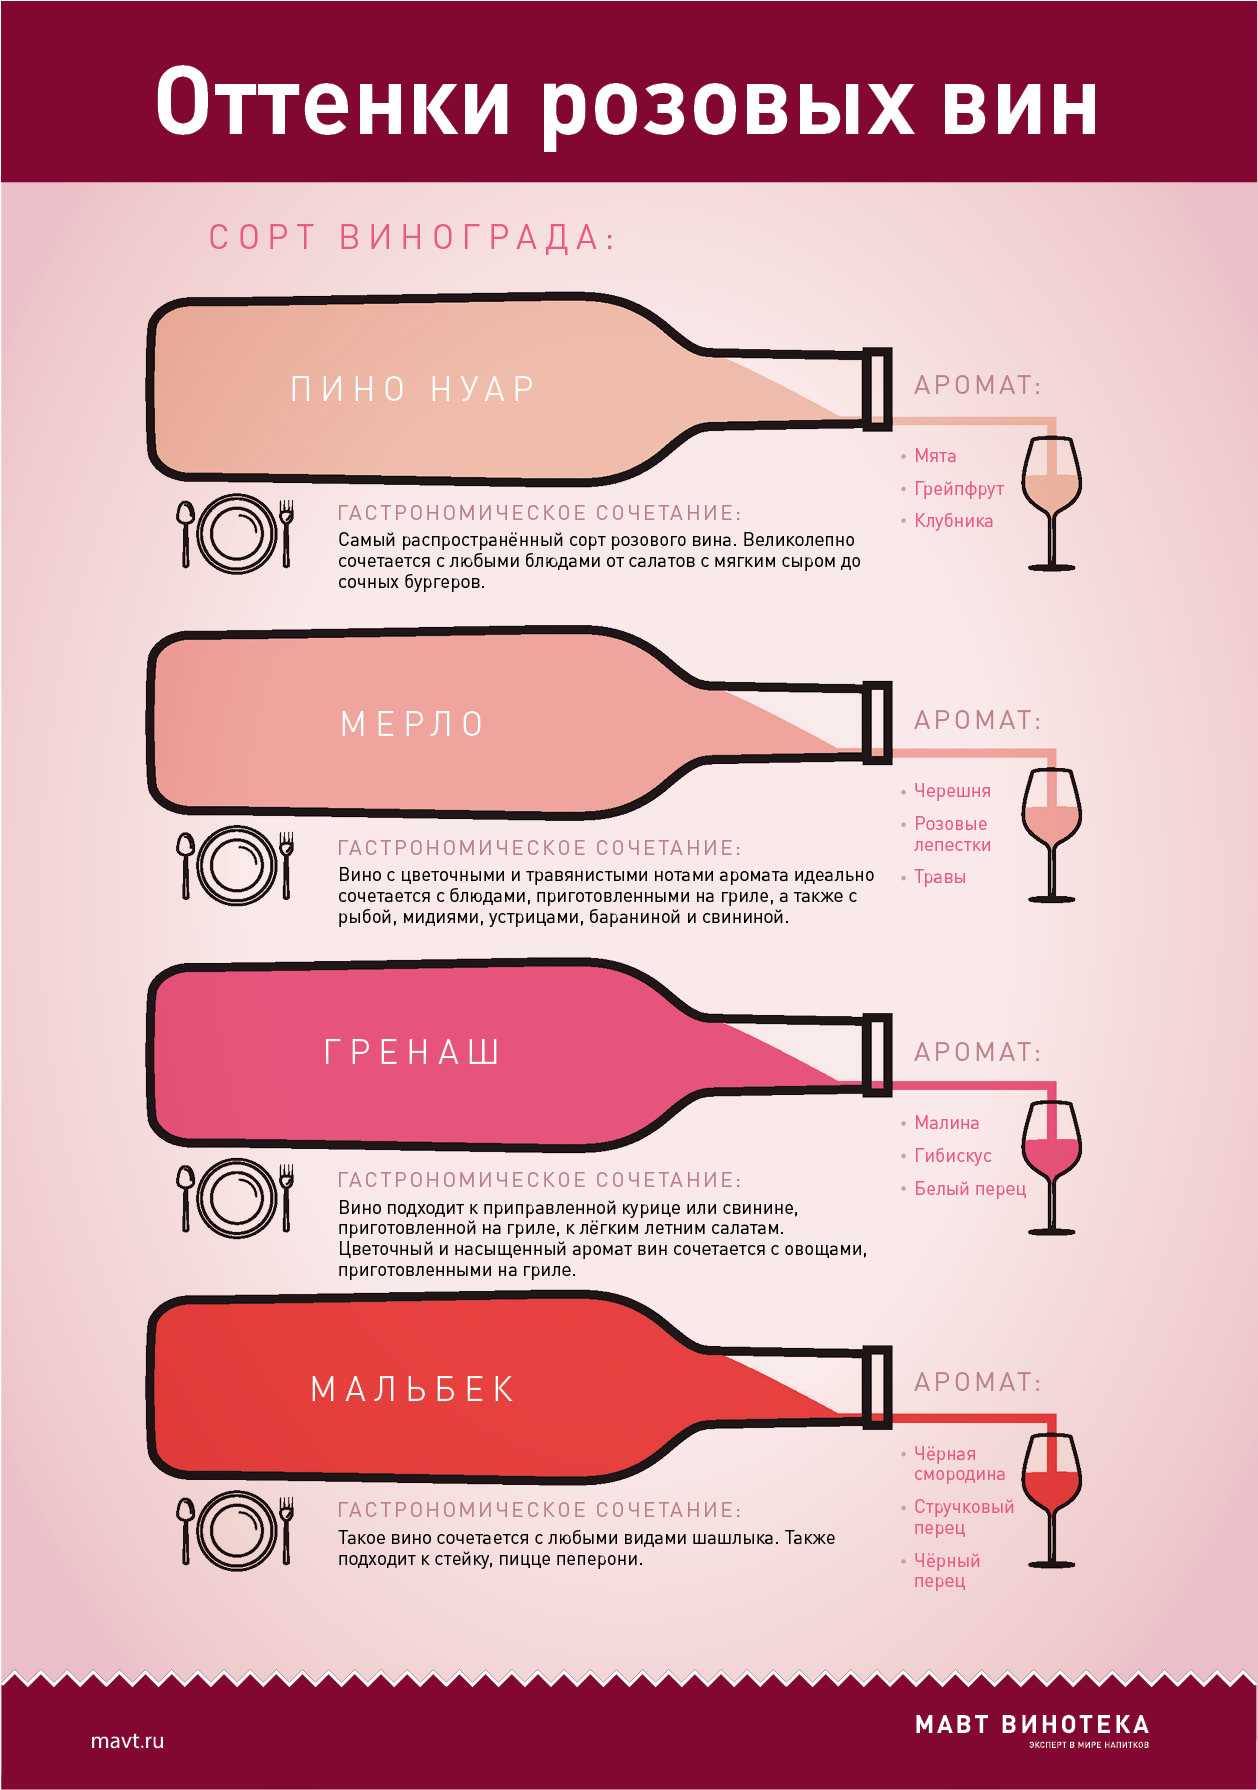 Розовое вино: история и особенности выбора